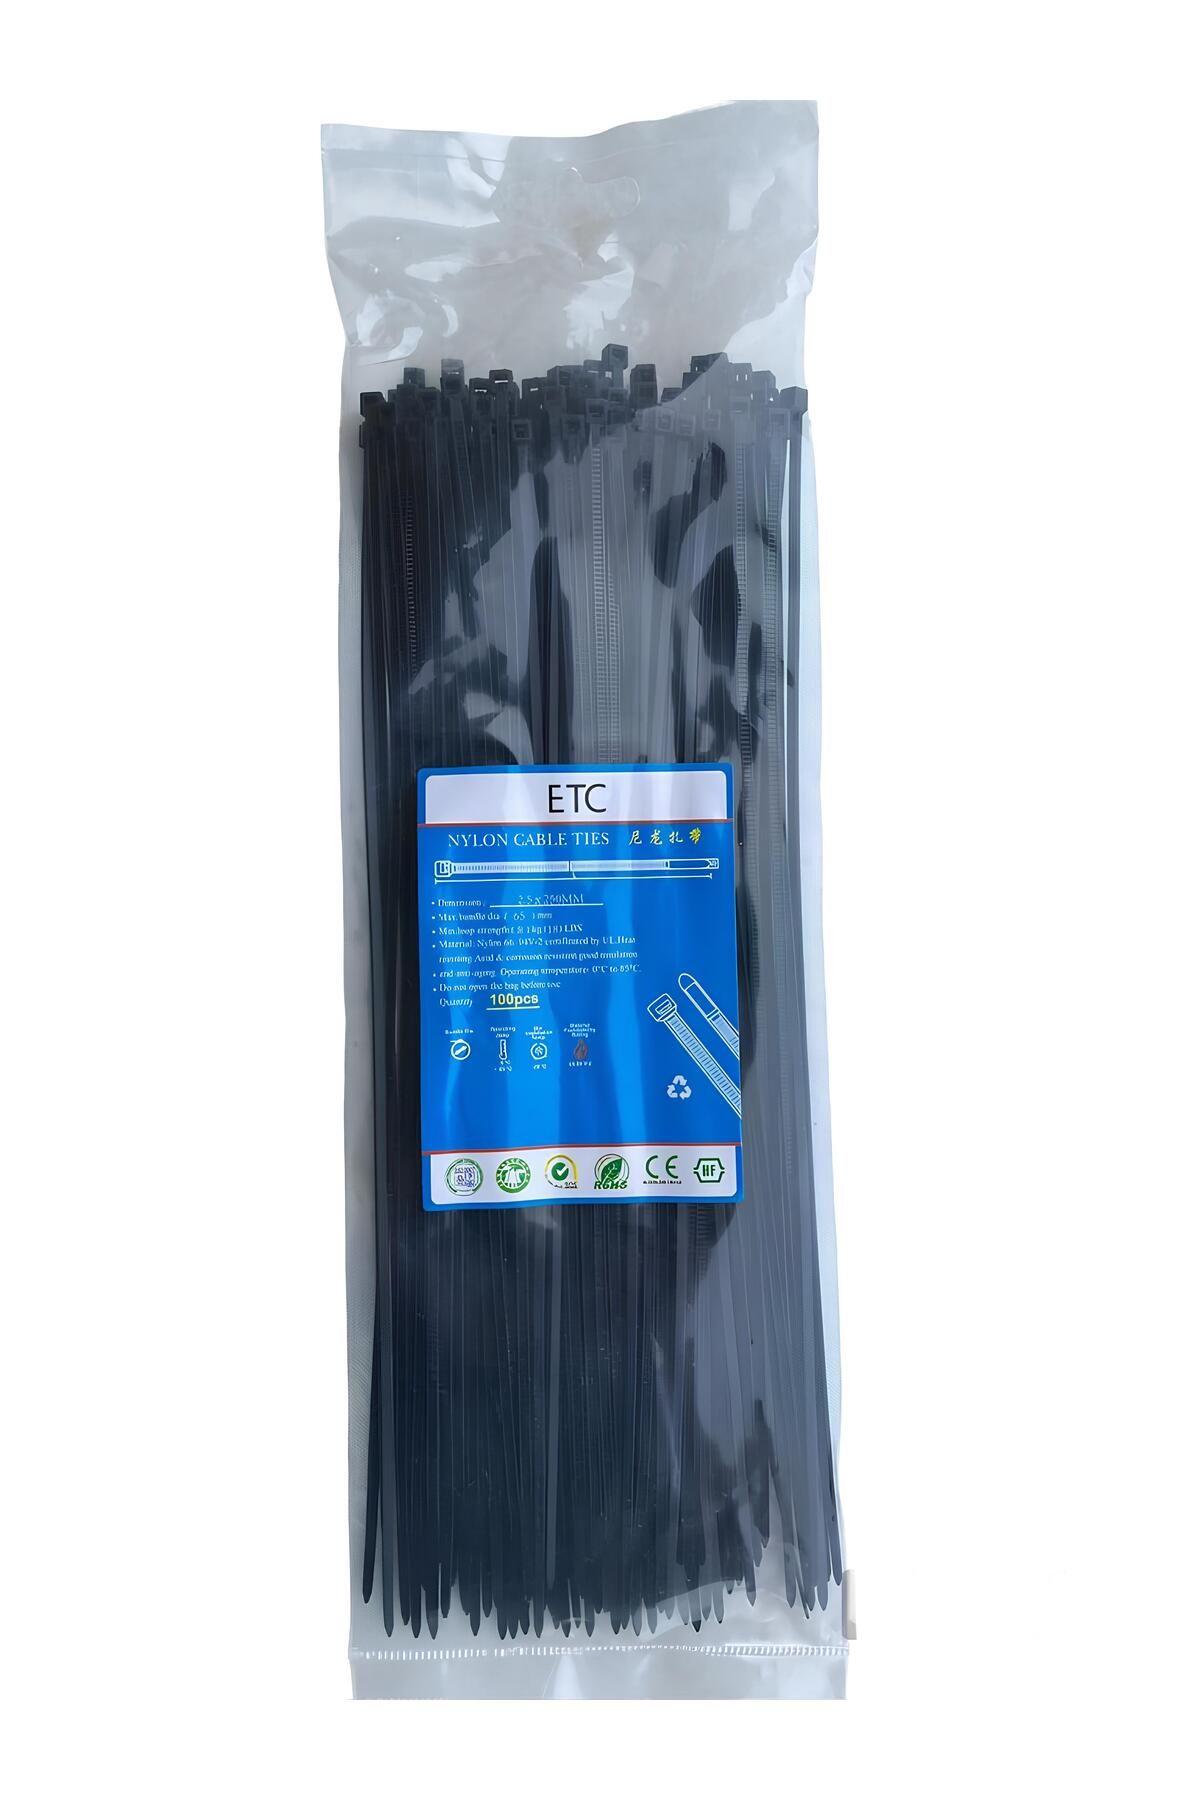 ETC Siyah Kablo Bağı , Plastik Kelepçe , Cırt Kelepçe 2,5 X 250 Mm. (100 Adet) 25 cm